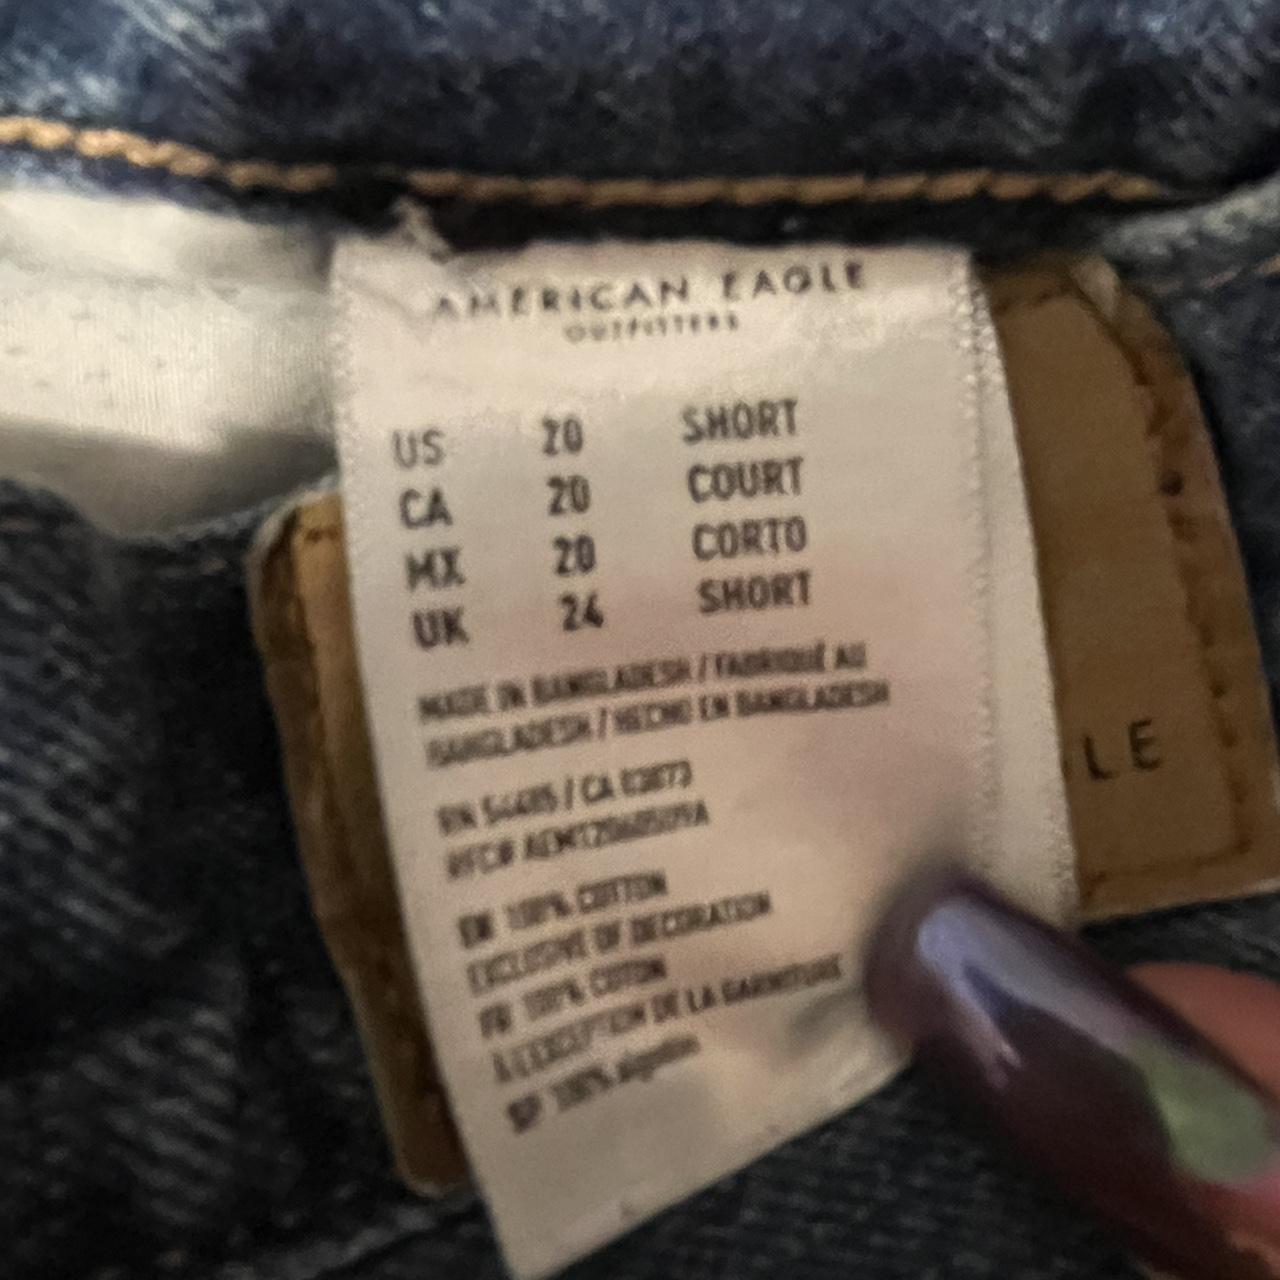 American Eagle 90s boyfriend fit jeans! Size 20,... - Depop